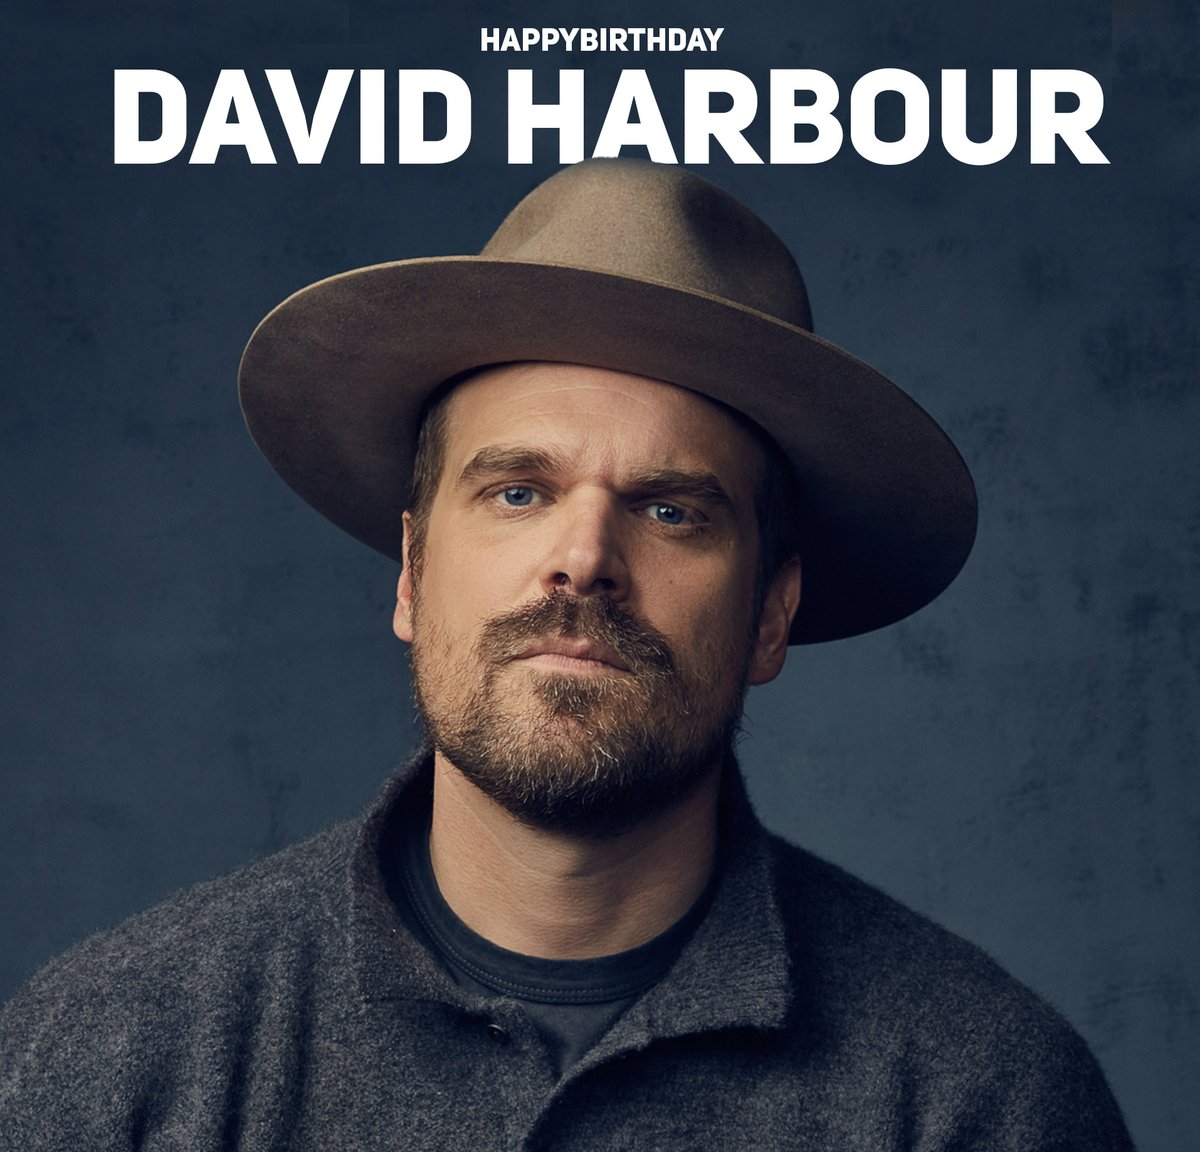 Wishing David Harbour Very HappyBirthday #HappybirthdayDavidharbour #HBDDavidharbour #Davidharbour #Khafaentertainment